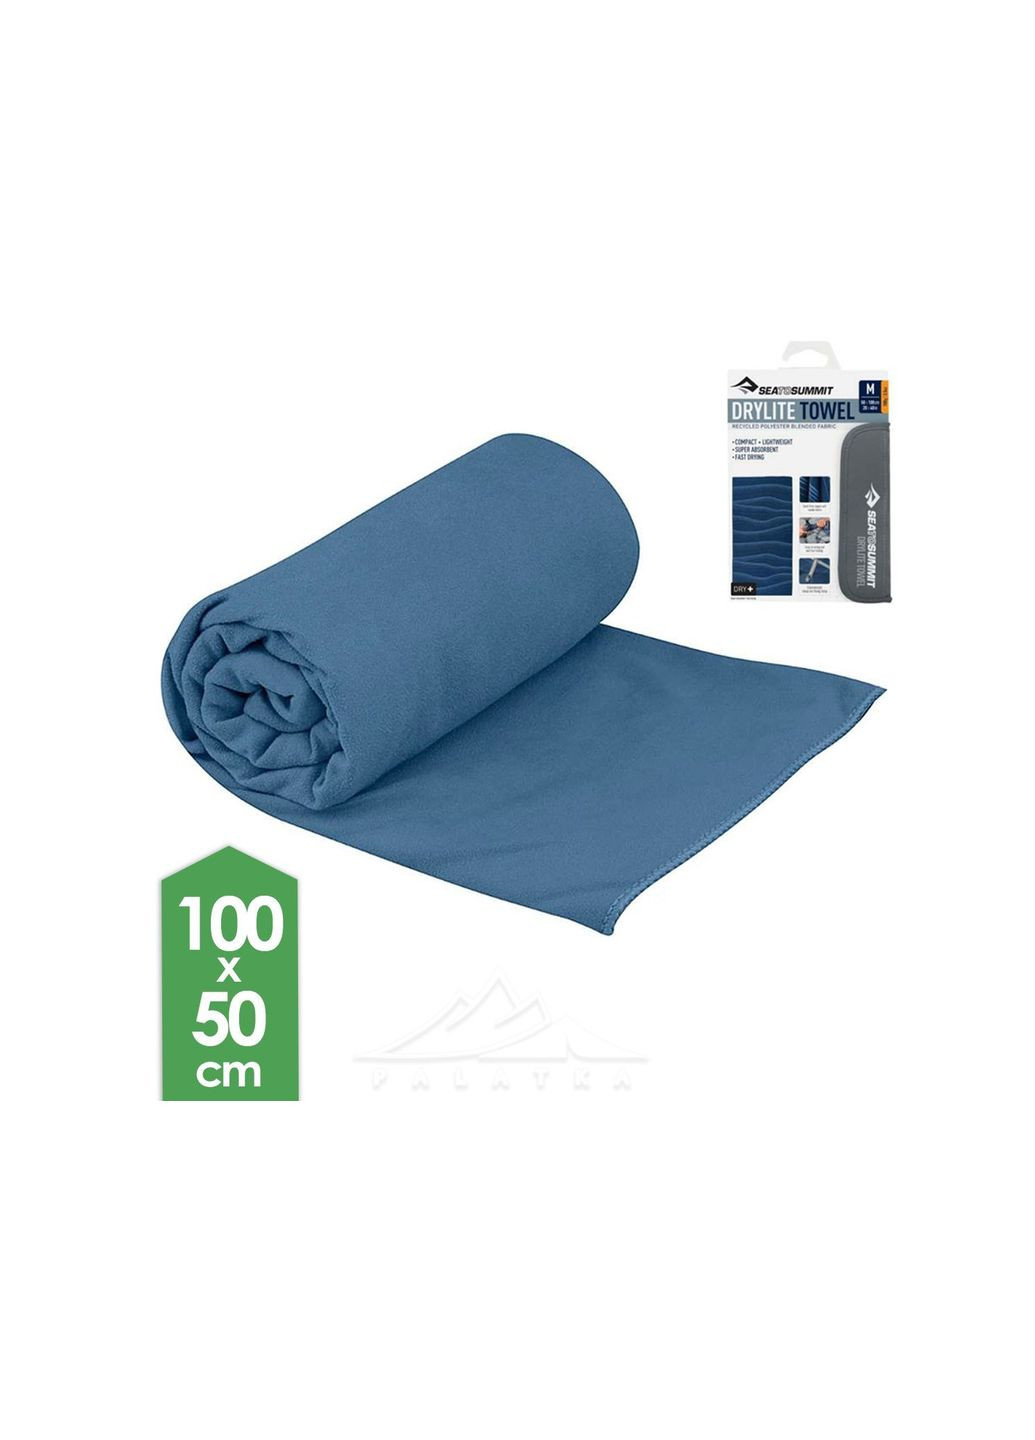 Sea To Summit полотенце drylite towel m синий производство -